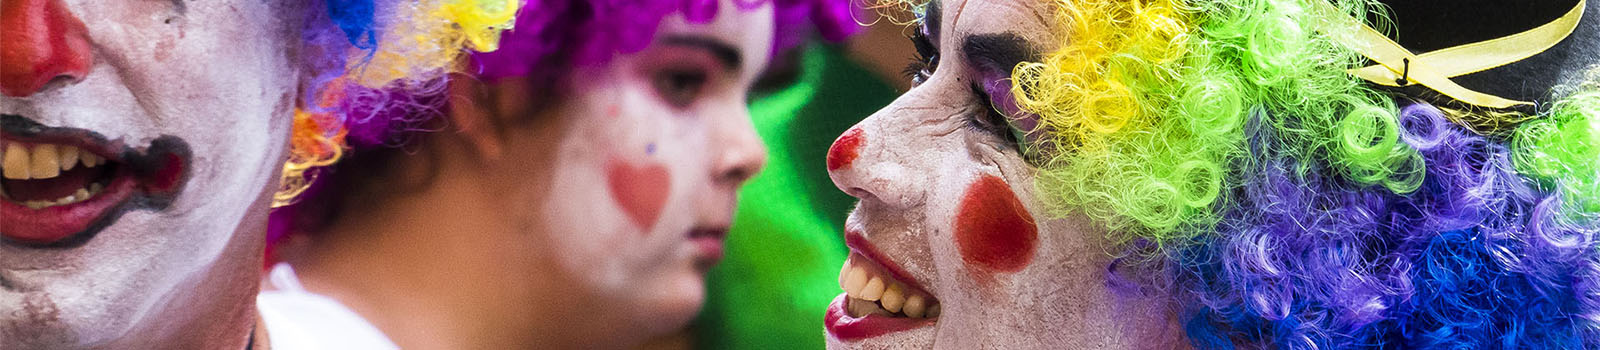 Kunst Kulturveranstaltungen Fuerteventura: TranTran internationales Clown Festival Gran Tarajal.